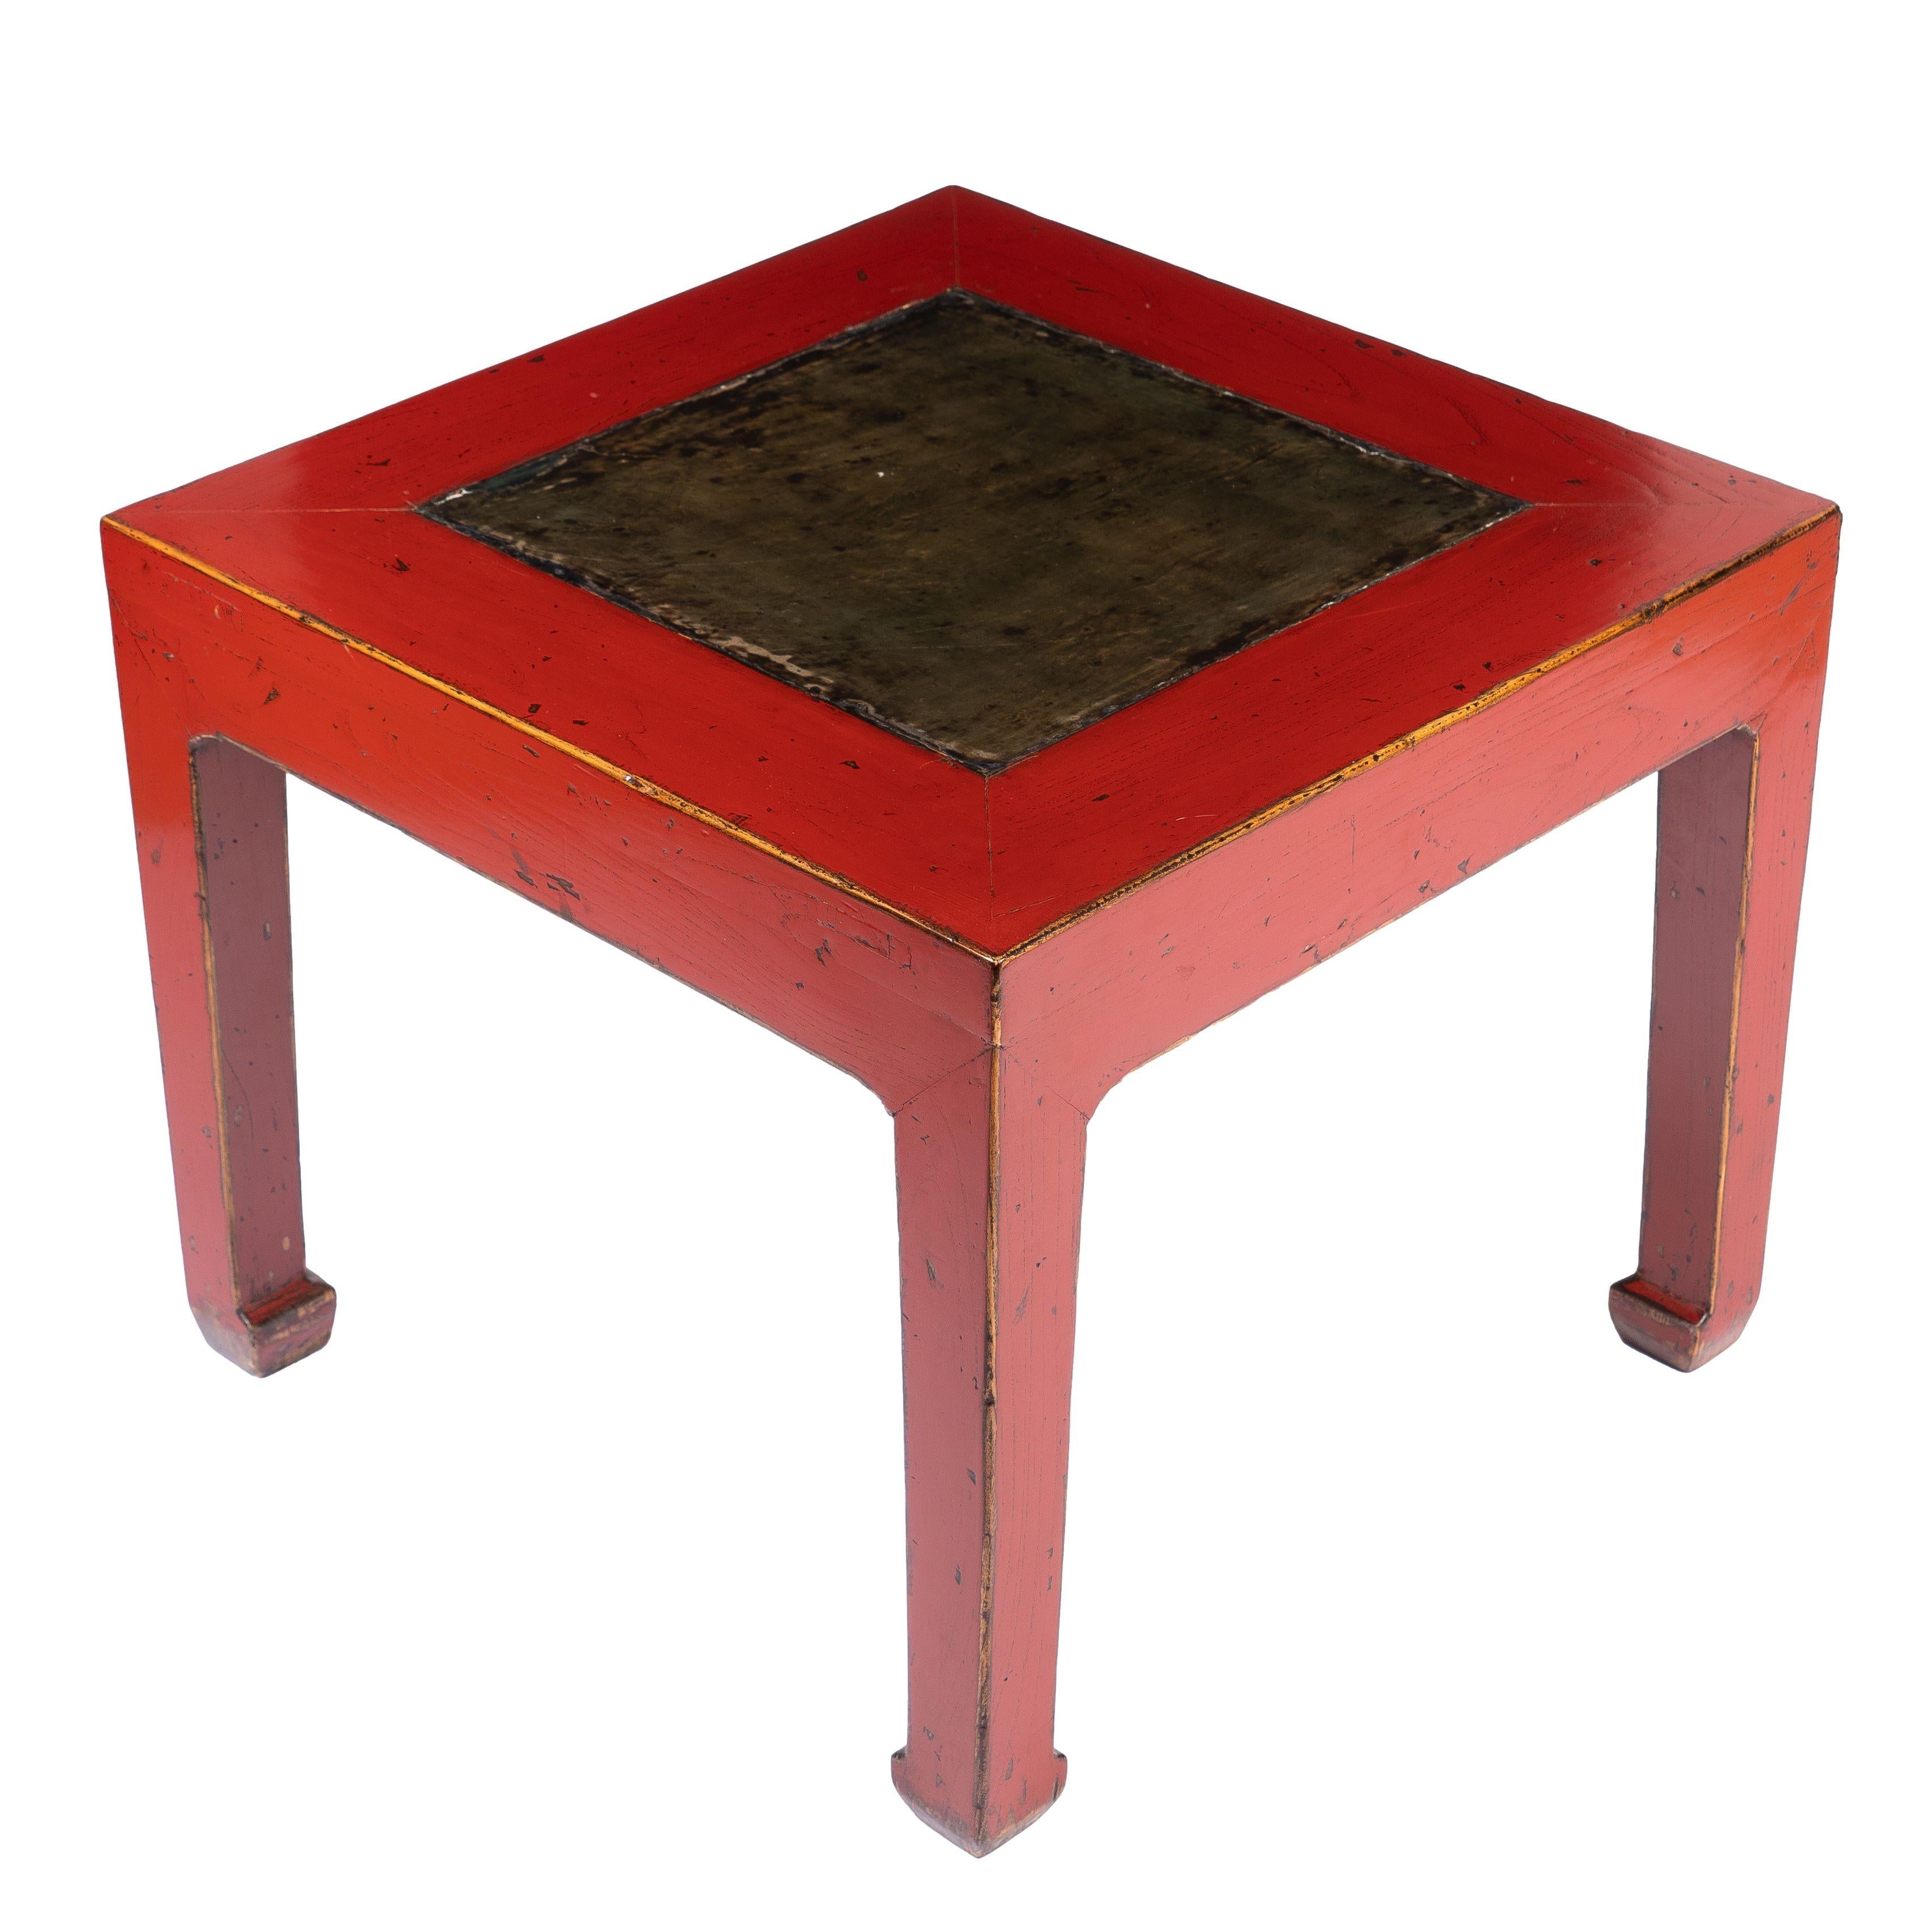 Rot lackierter, quadratischer Tisch mit einer Mittelplatte aus Stein. Die hüftlose Tischplatte wird von vier Vierkantbeinen mit Huffuß getragen. Ausgestattet mit einem früheren Kalligrafiestein.
China, um 1900.